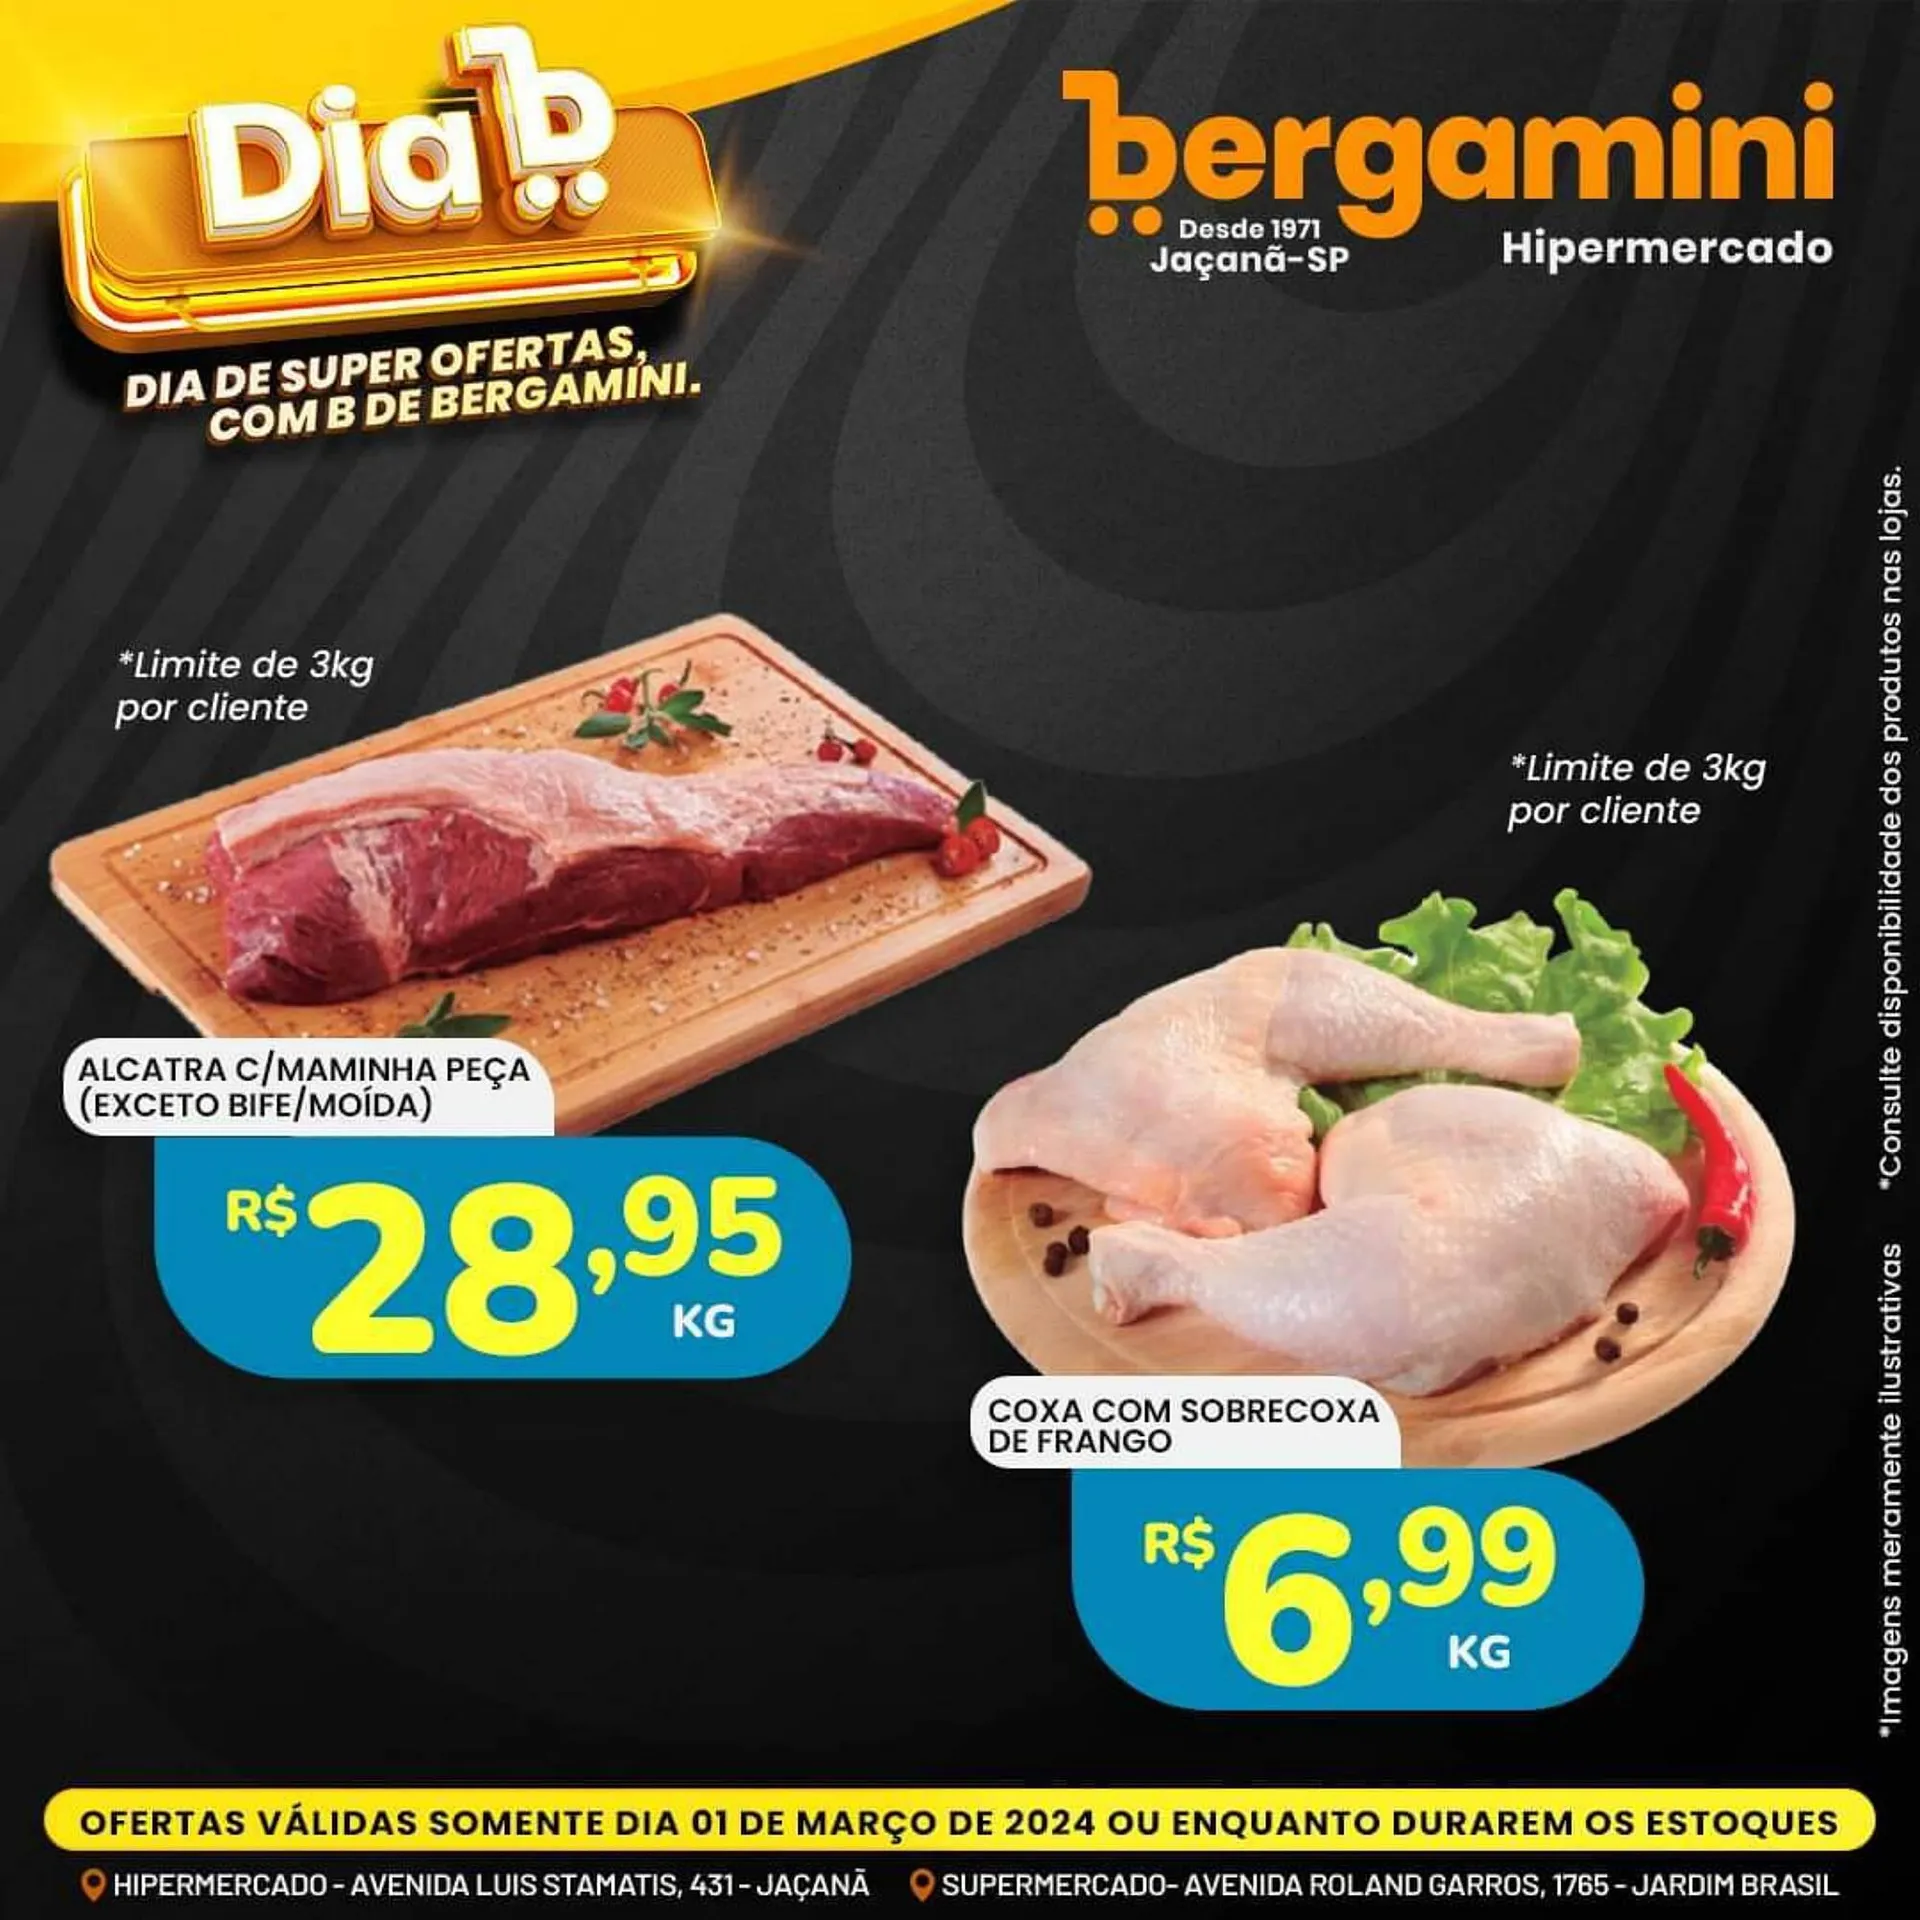 Encarte de Catálogo Supermercado Bergamini 29 de fevereiro até 1 de março 2024 - Pagina 